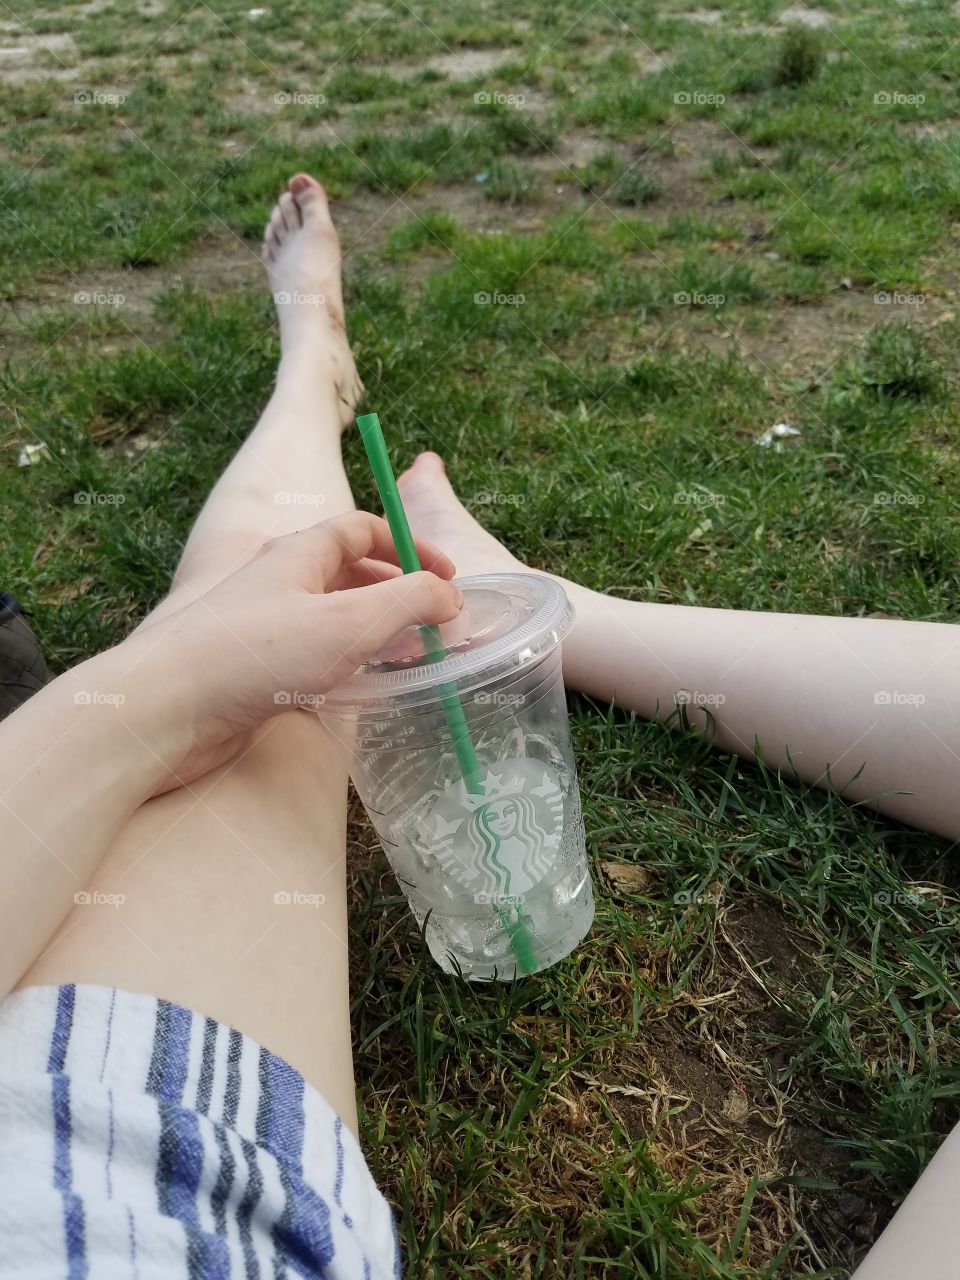 Starbucks at the park